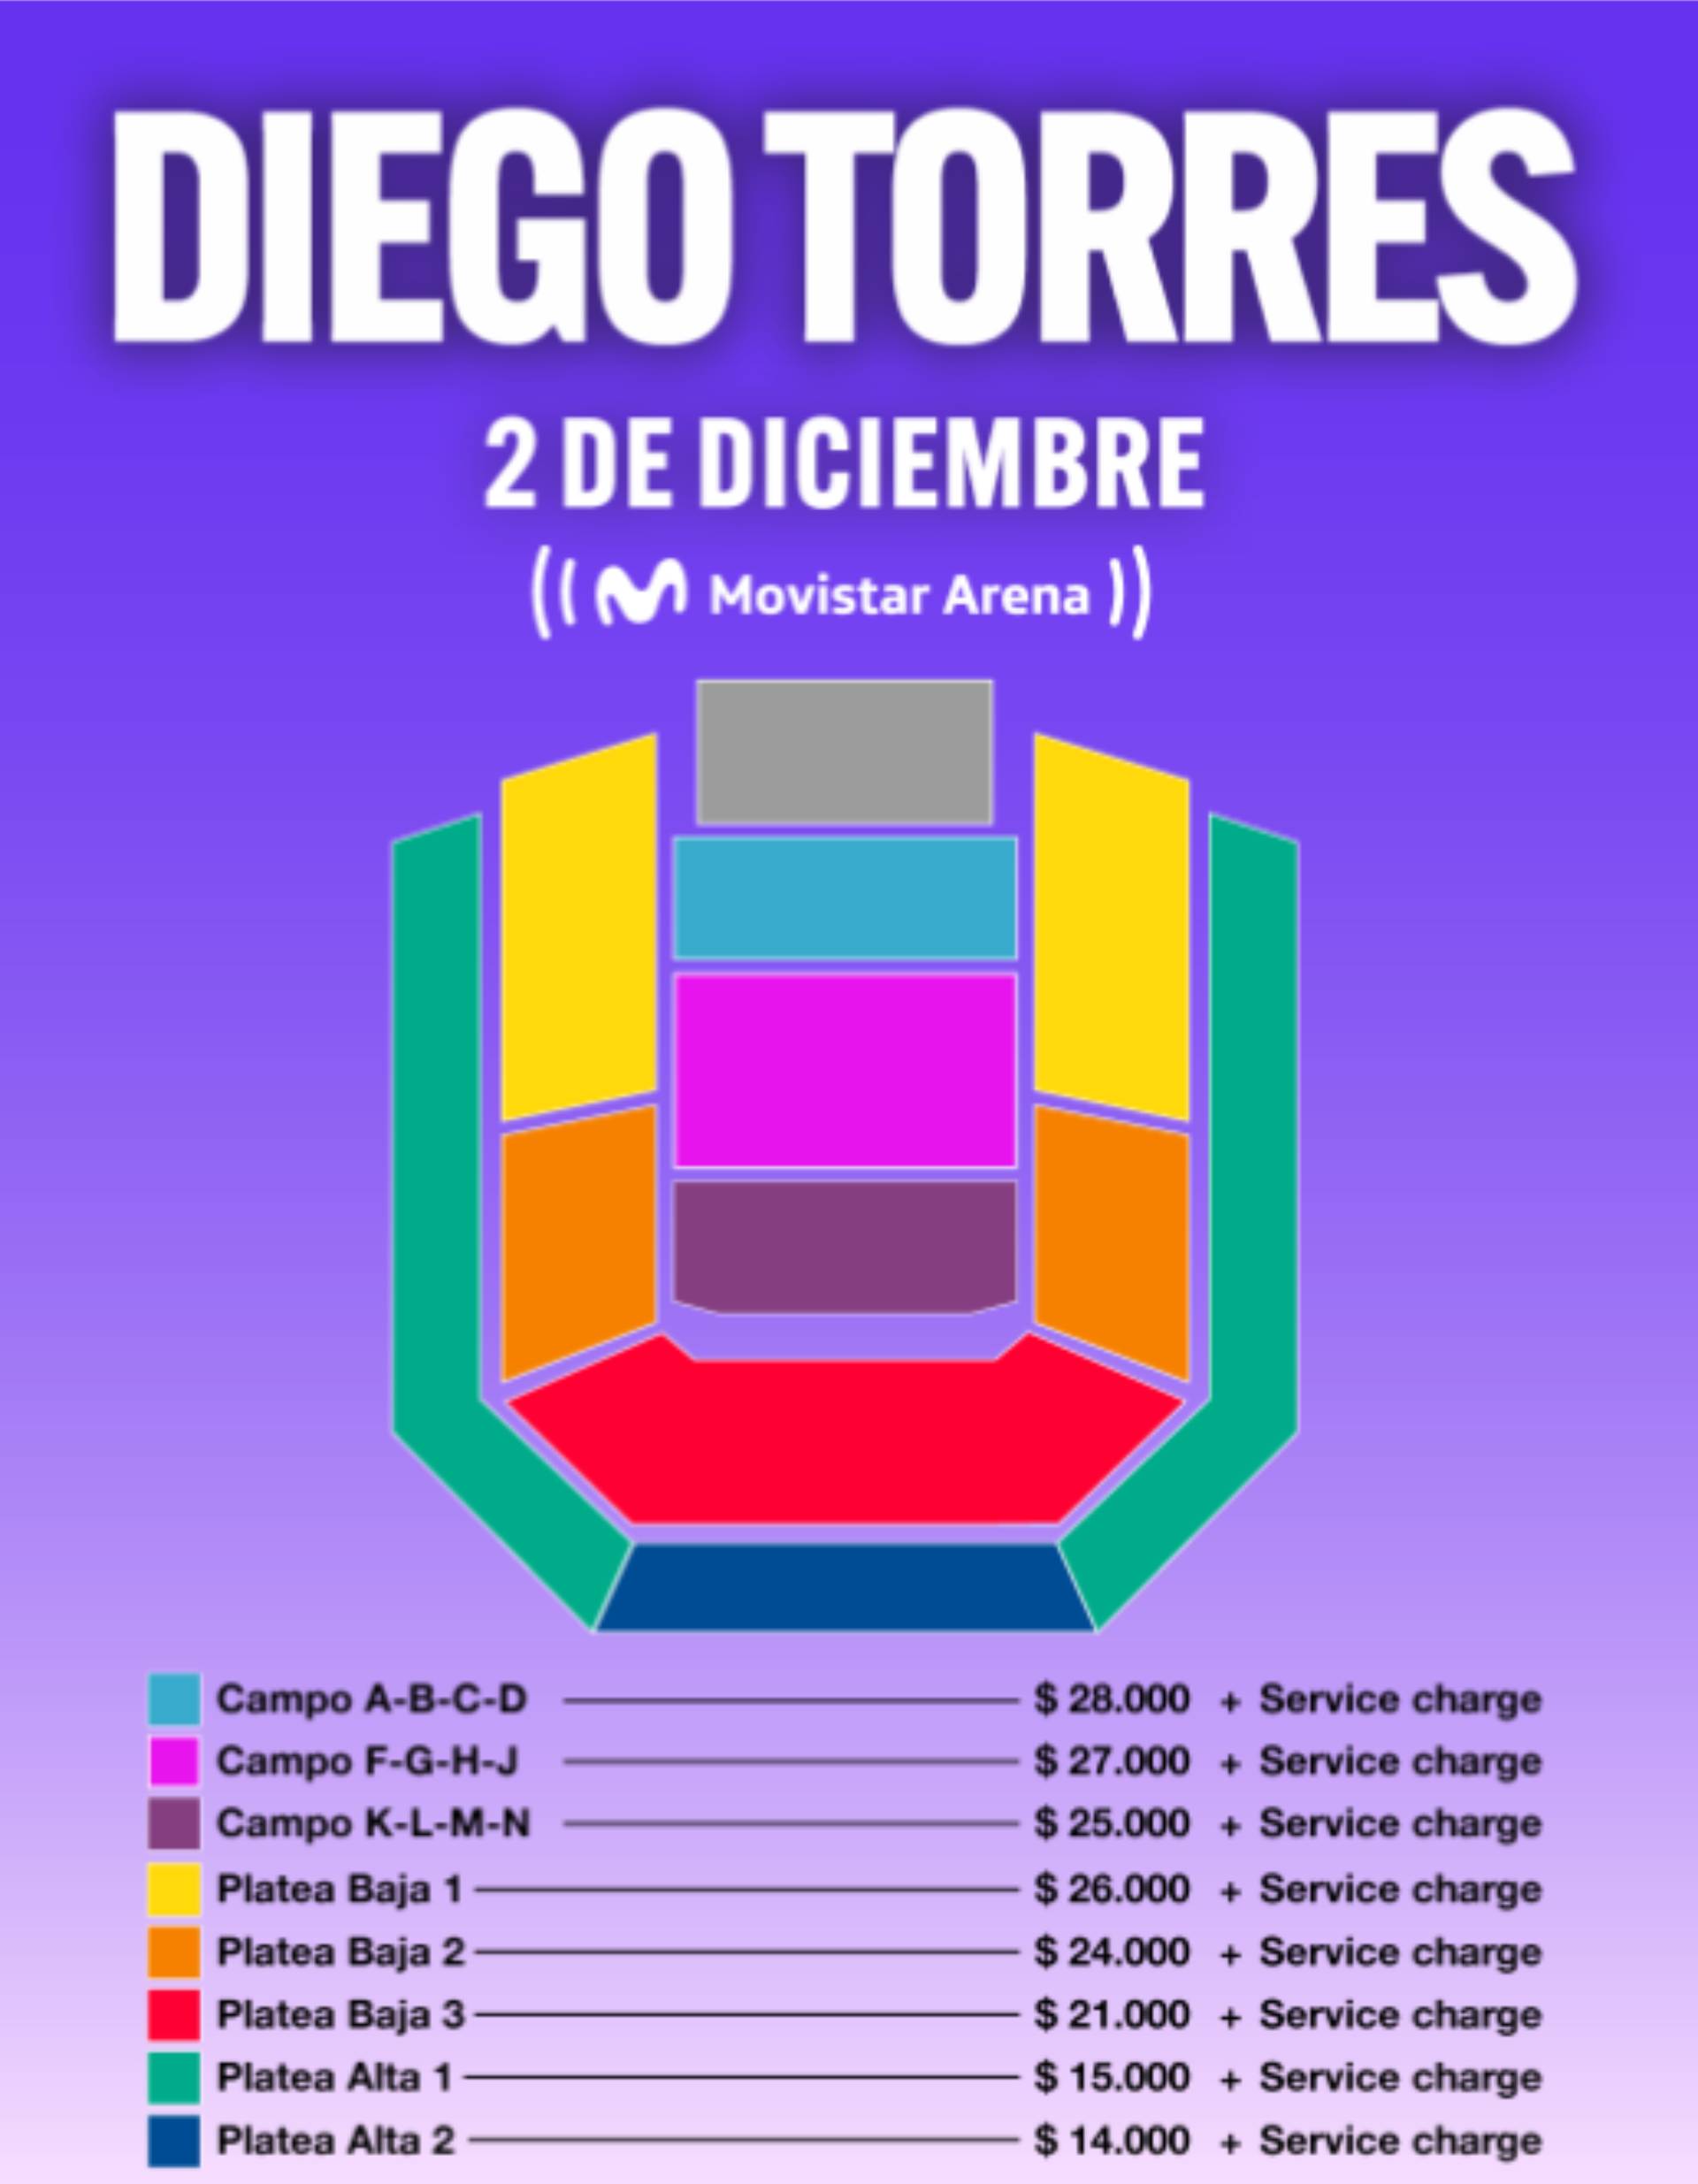 Los precios de las entradas para el show de Diego Torres